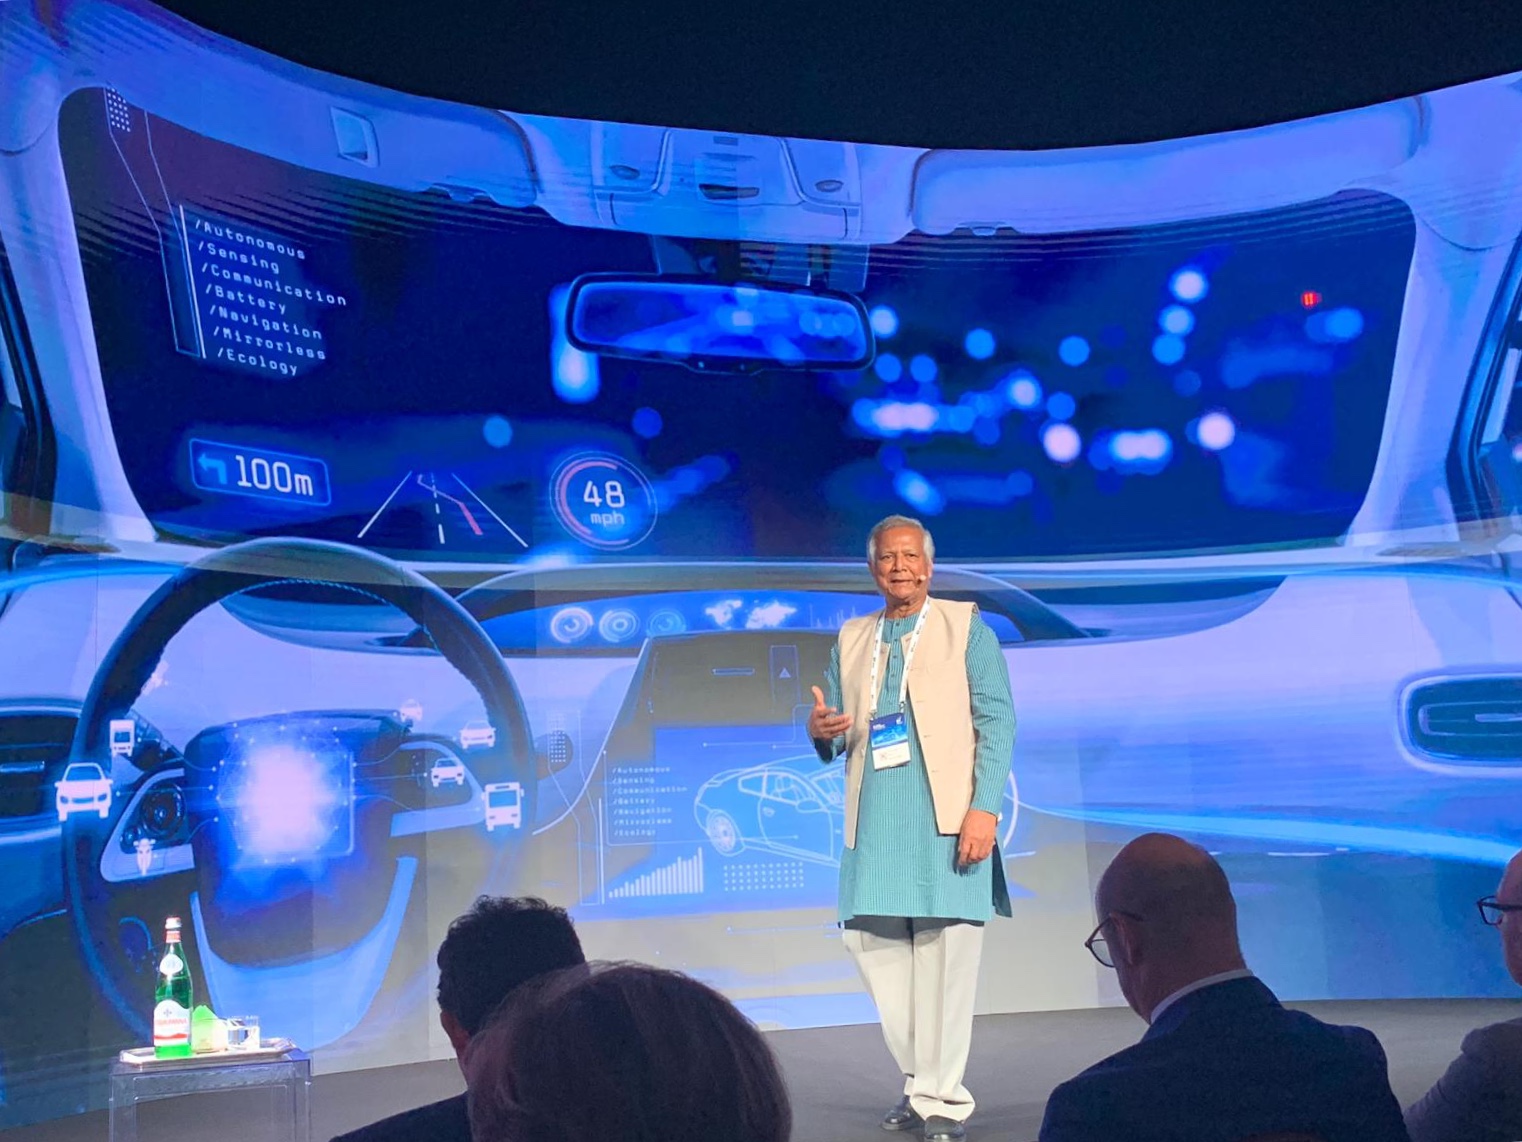 Fotografia dell'economista e professore bengalese Mohammad Yunus mentre parla all'uditorio di EY Digital Summit 2019. Yunus indossa abiti tradizionali del proprio paese, pantaloni lunghi chiari sotto una tunica celeste e un gilet chiaro.